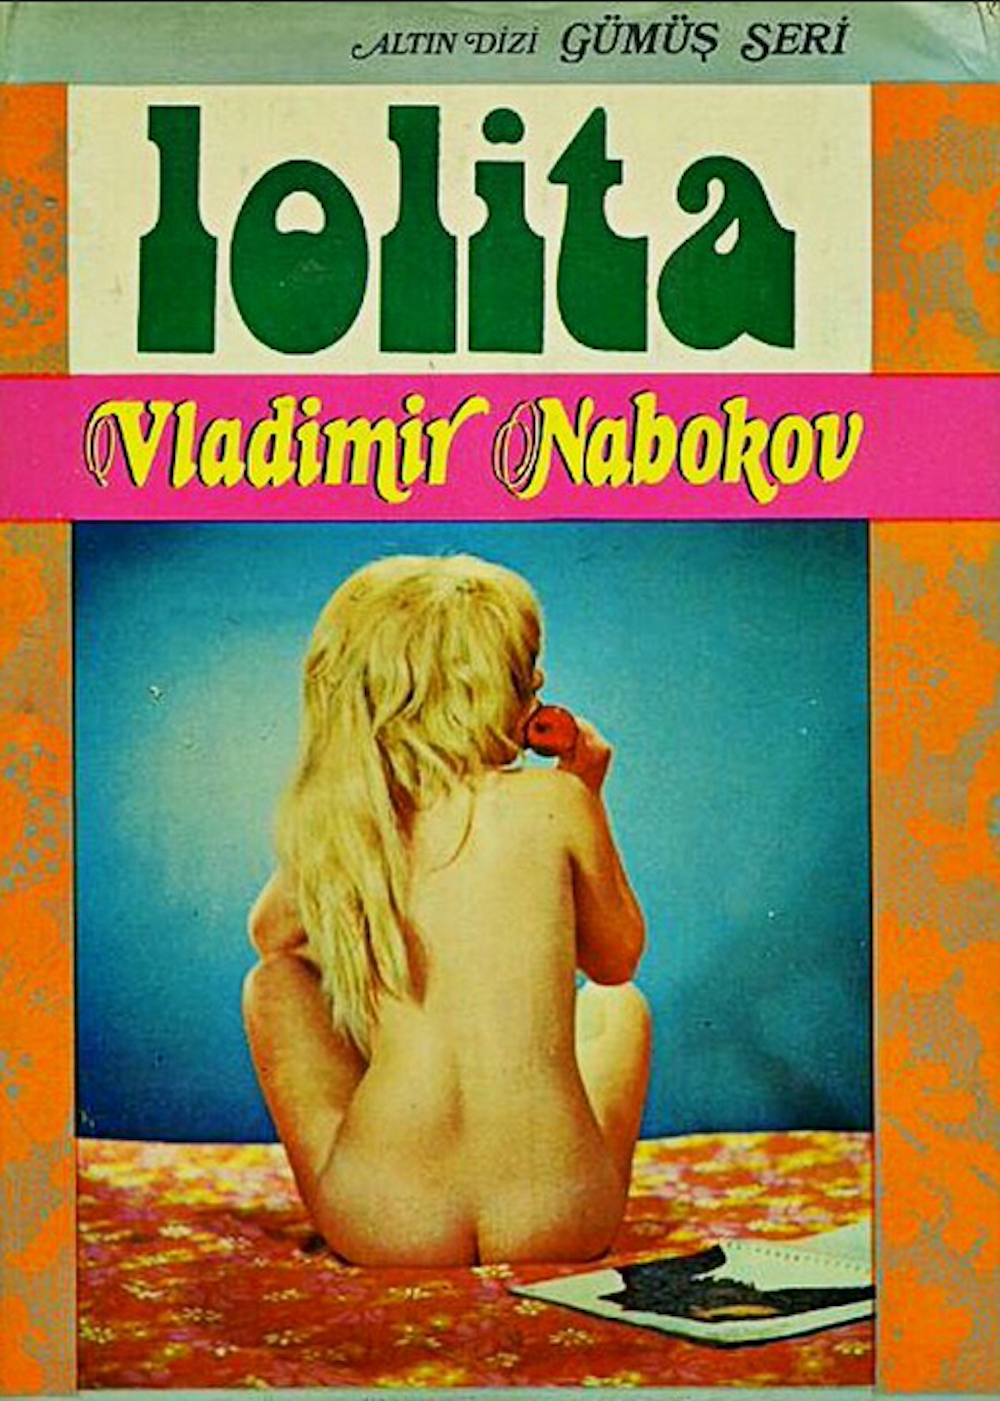 A Turkish edition of <em>Lolita</em> published in 1974. Image: Vladimir Nabokov / Facebook